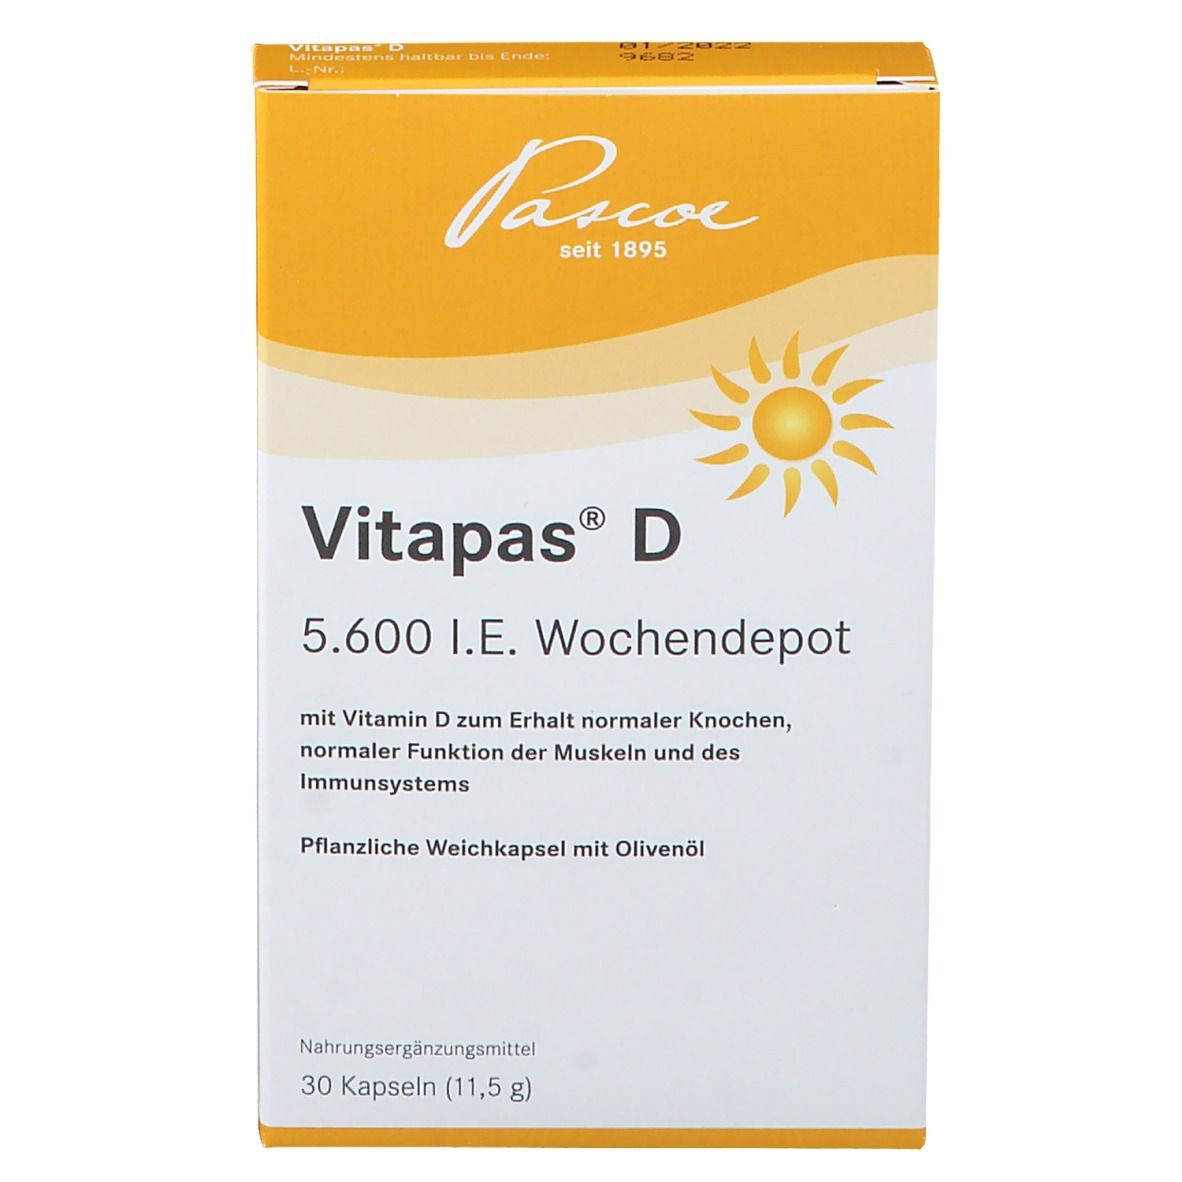 Vitapas® D 5600 I.E. Wochendepot